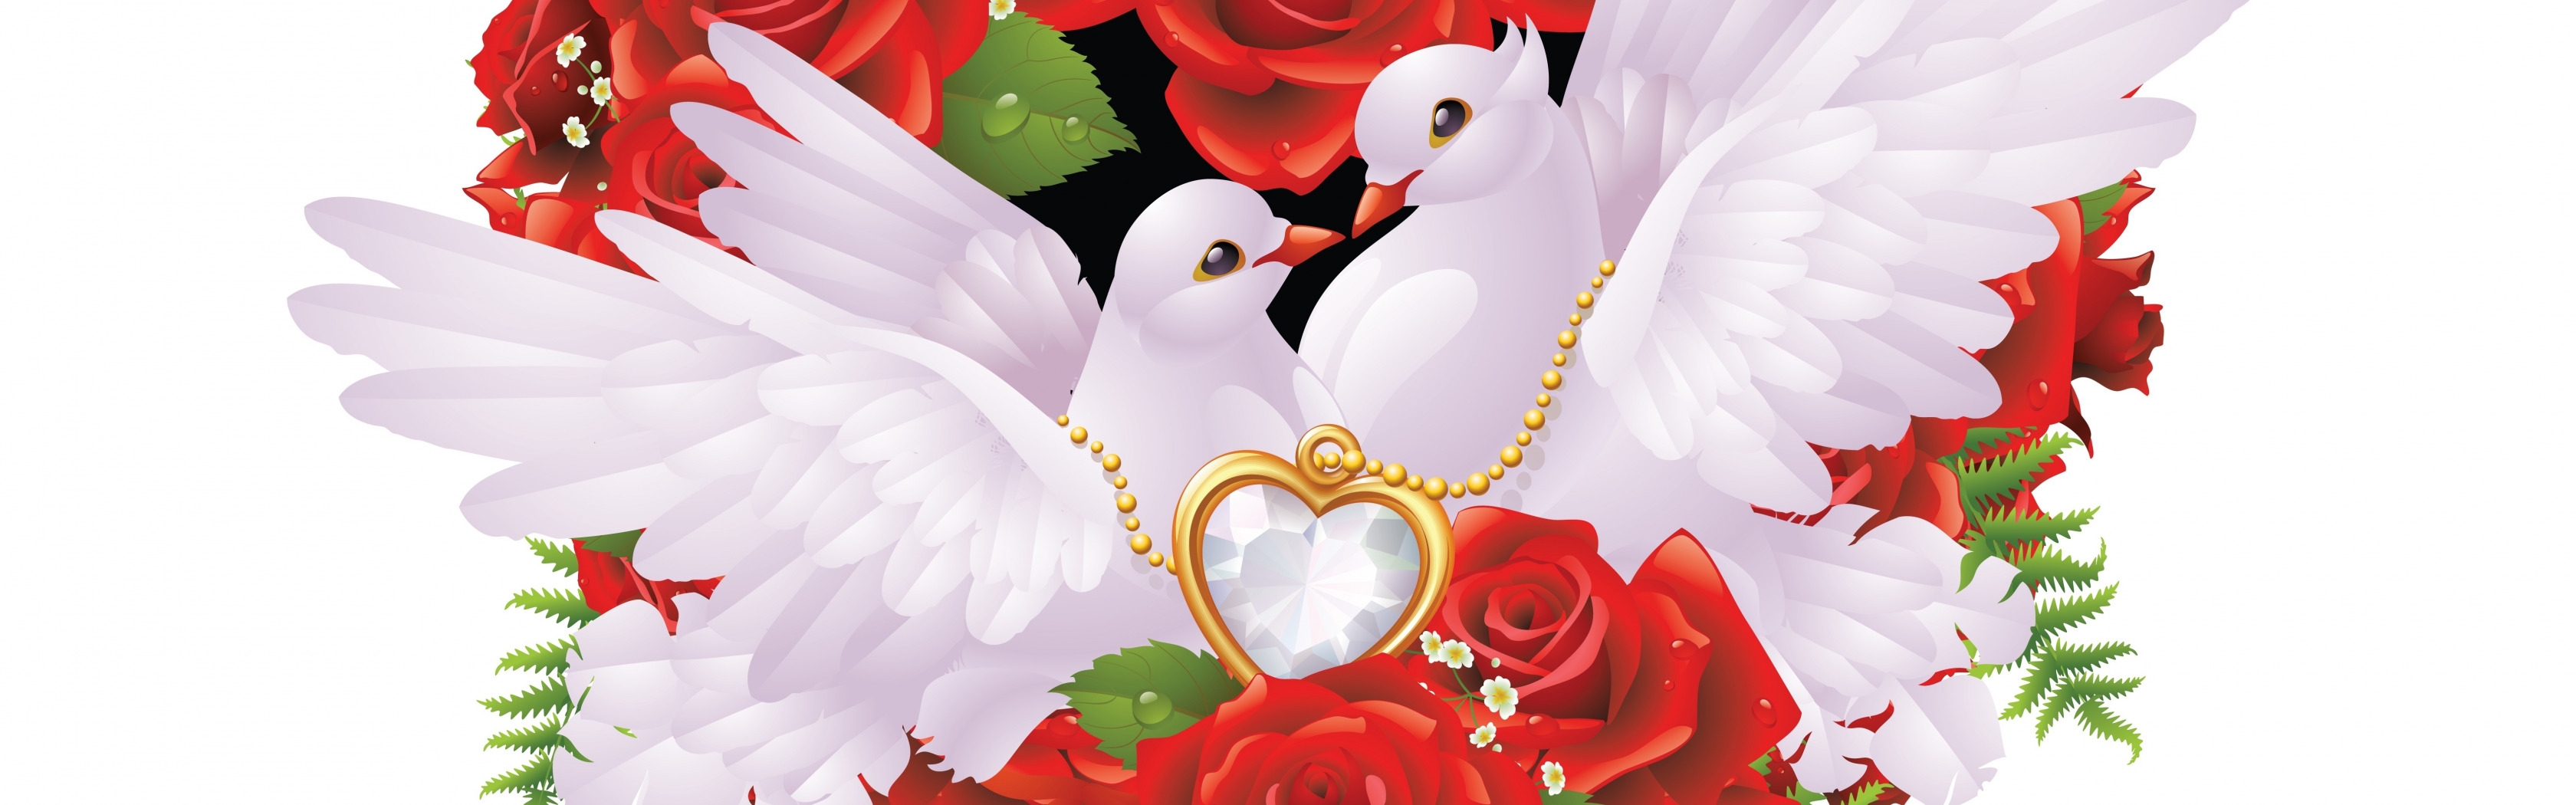 Годовщина беларусь. Свадебные голуби. Свадебные плакаты с голубями. Сердечки голуби свадьба. Свадебный фон с голубями.